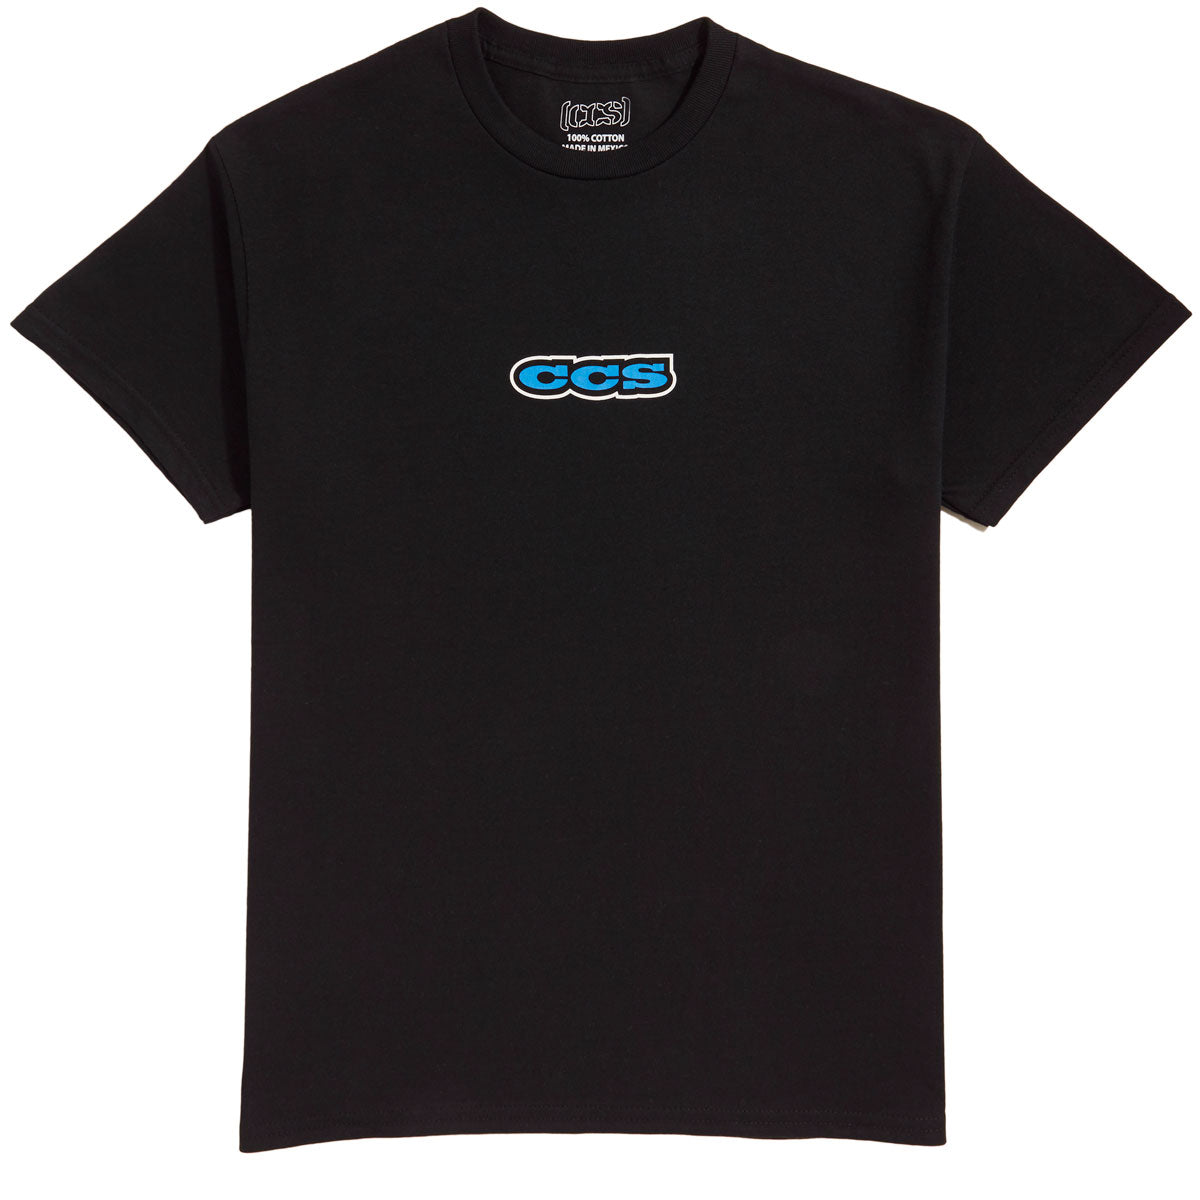 CCS 96 Logo T-Shirt - Black/Blue/White image 1